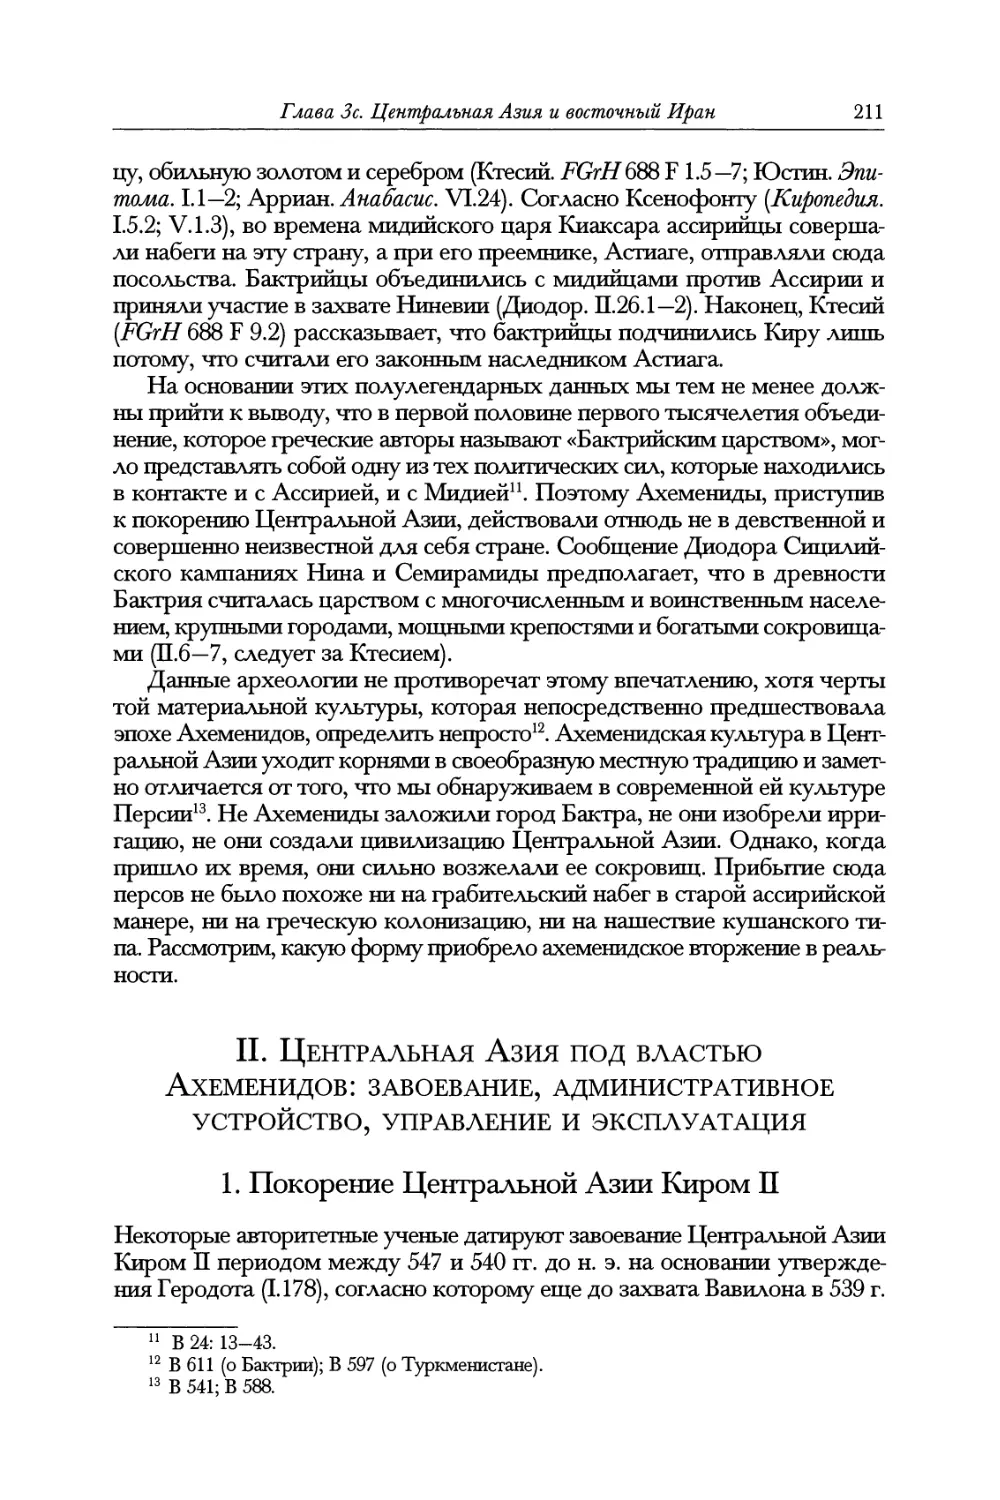 II. Центральная Азия под властью Ахеменидов: завоевание, административное устройство, управление и эксплуатация